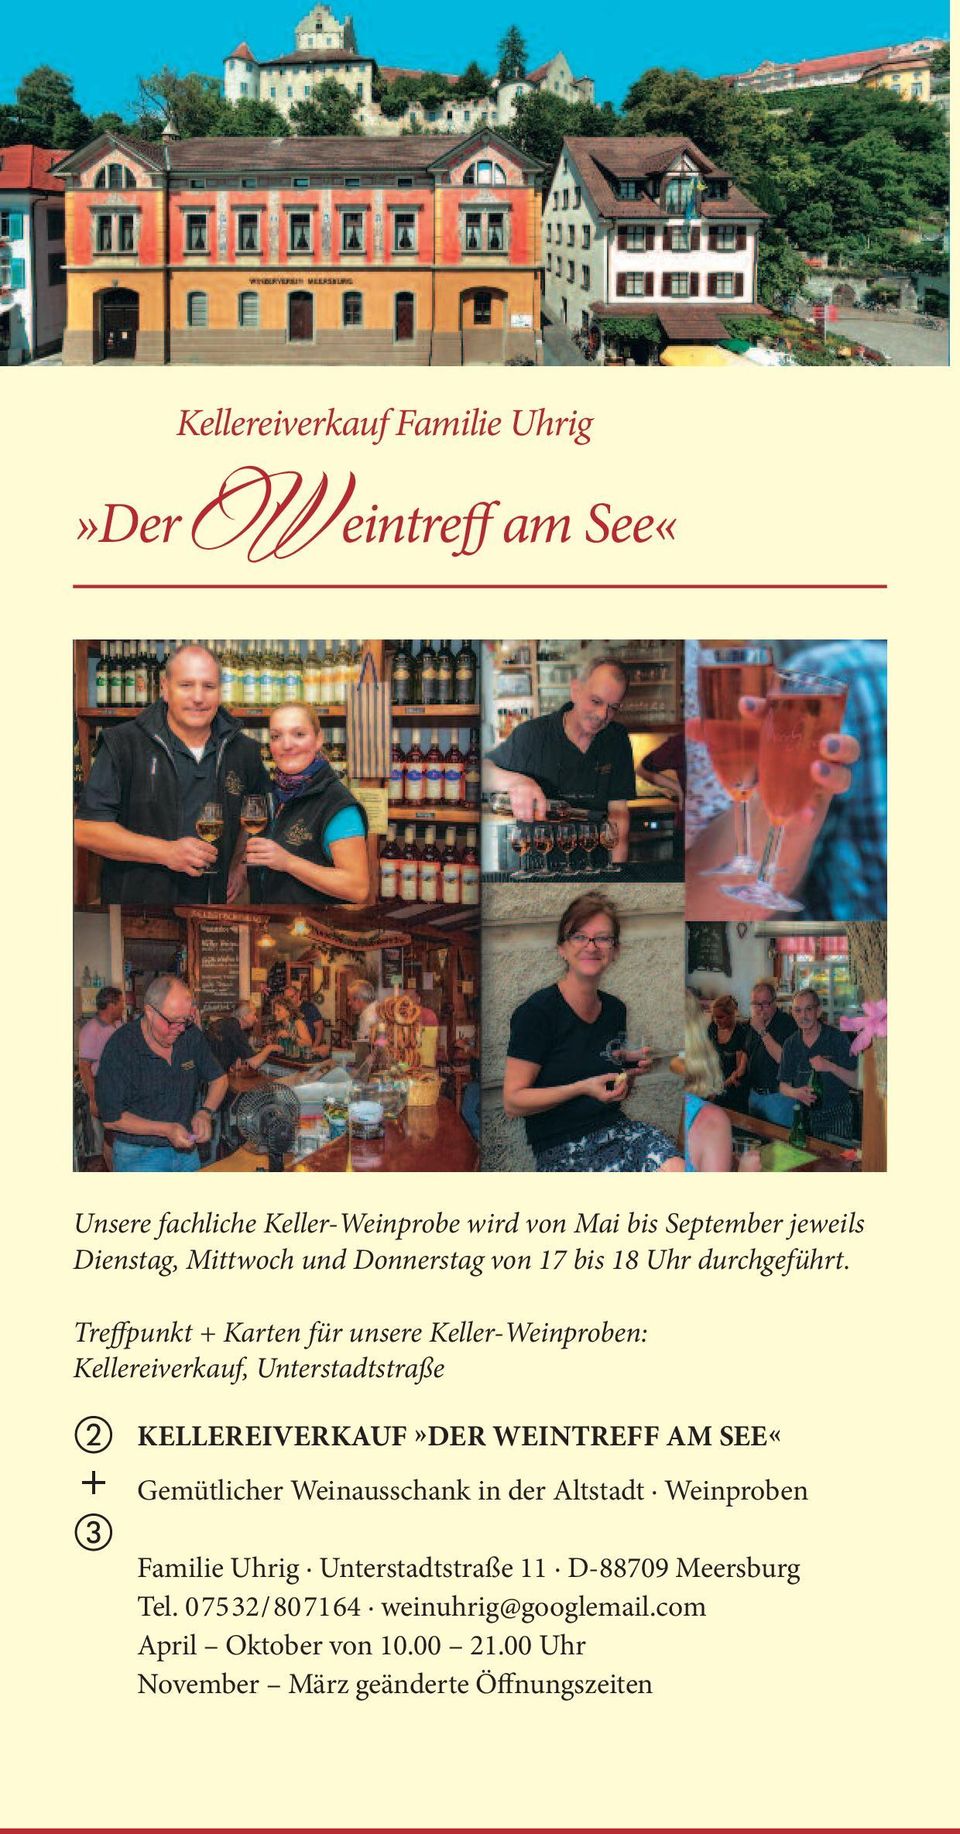 Treffpunkt + Karten für unsere Keller-Weinproben: Kellereiverkauf, Unterstadtstraße + KELLEREIVERKAUF»DER WEINTREFF AM